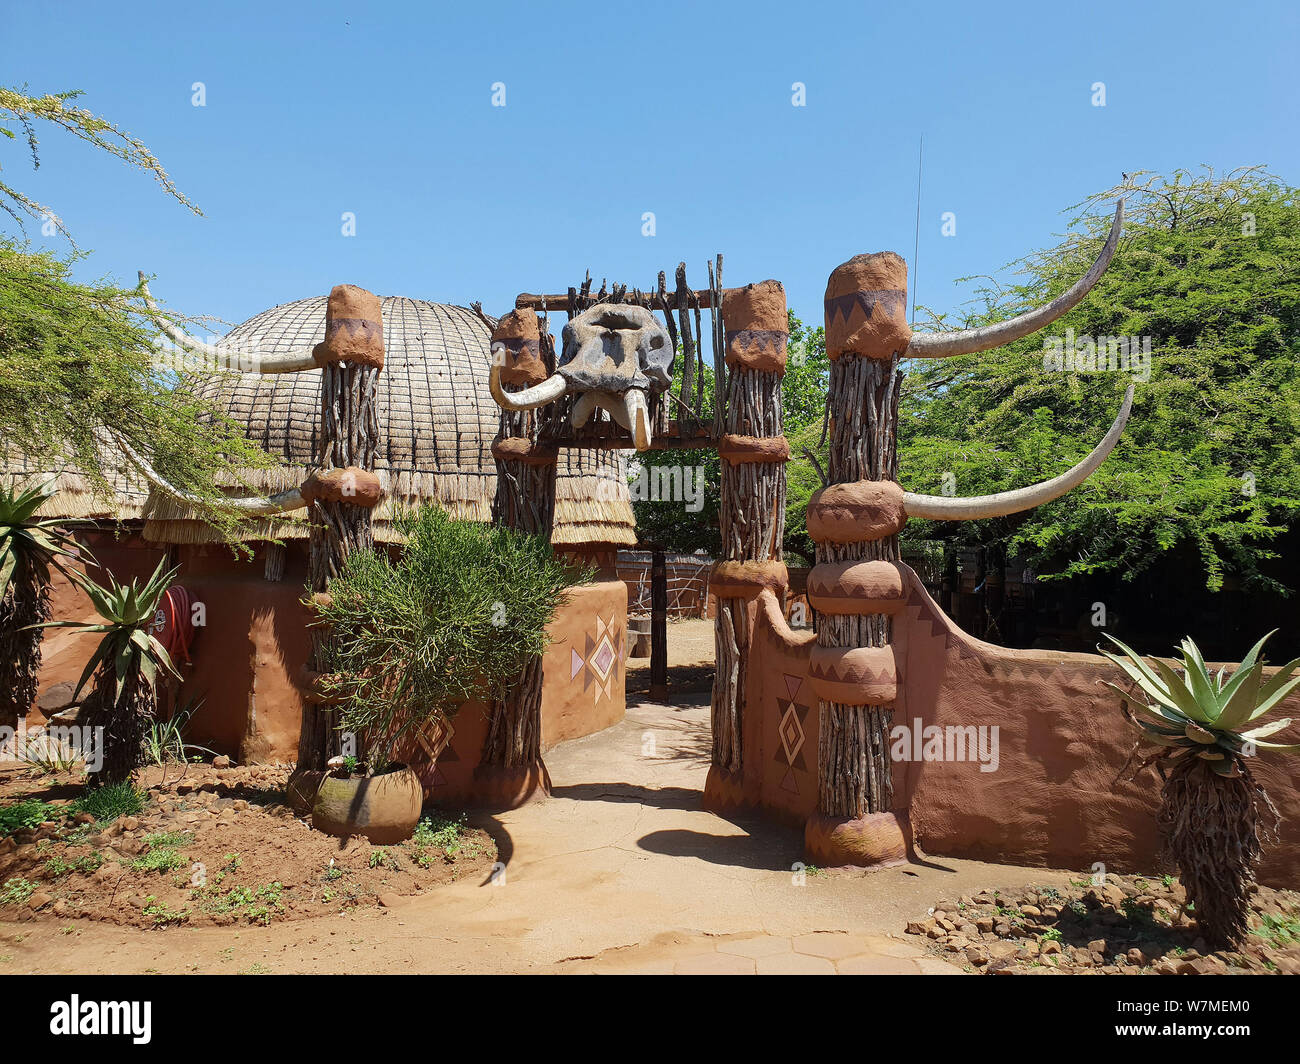 Entrée de Village de la culture zoulou de Shakaland, Eshowe, Kwazulu Natal, Afrique du Sud Banque D'Images